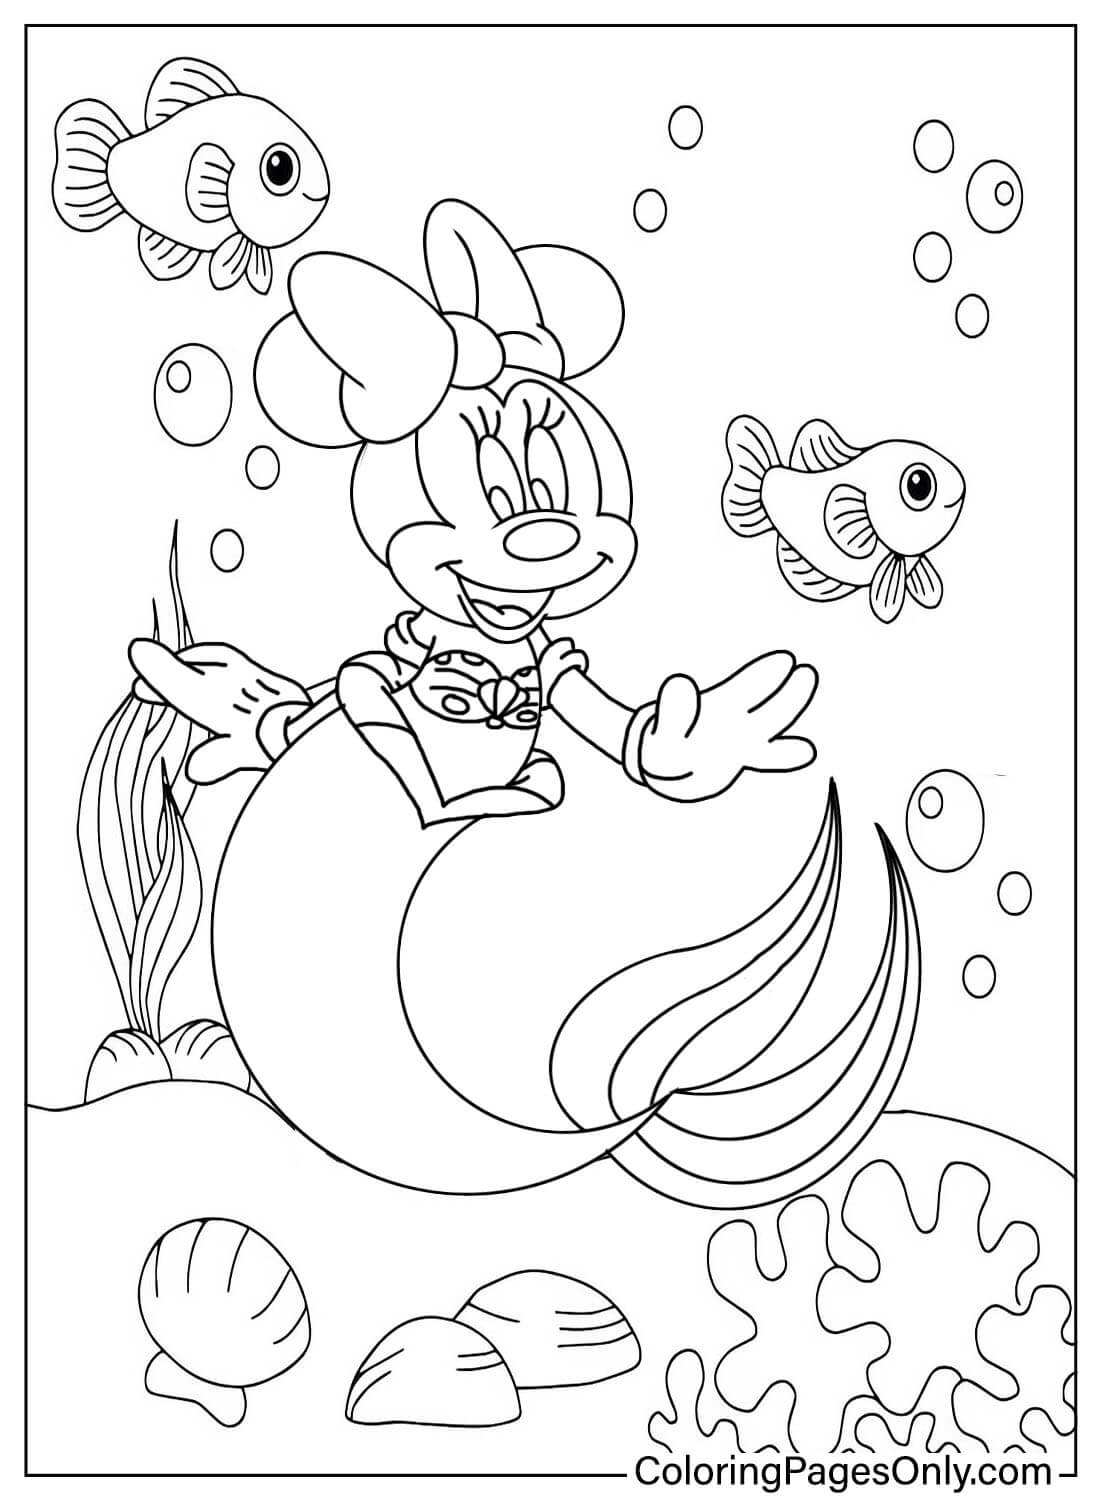 Kleurplaat Minnie Mouse zeemeermin van Minnie Mouse